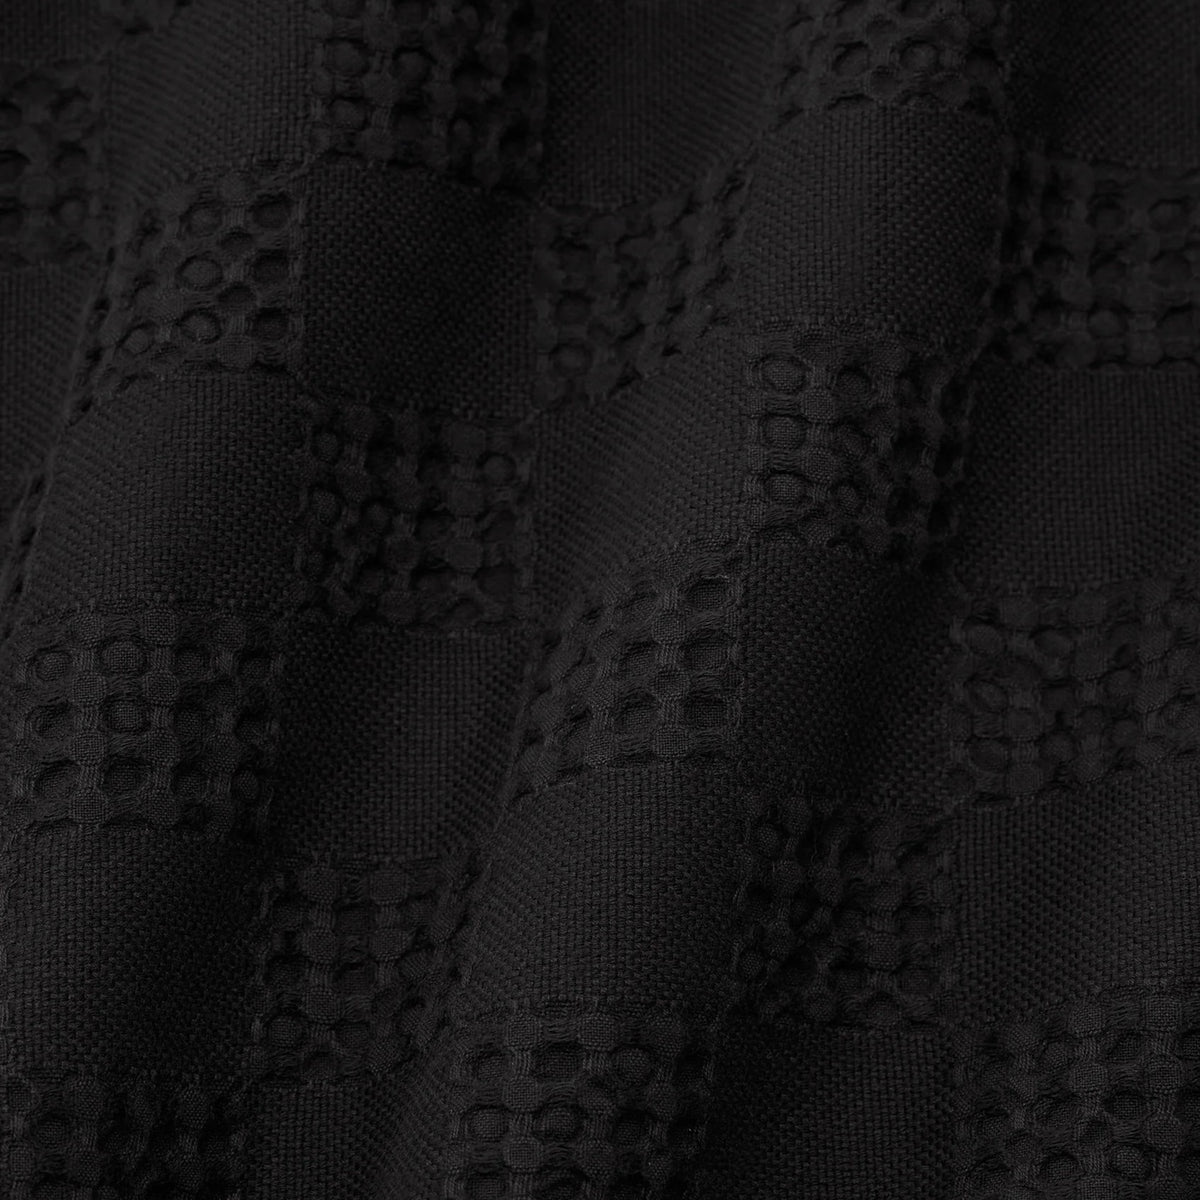 Swatch Sample of Sferra Straccio Kitchen Towel in Black Color